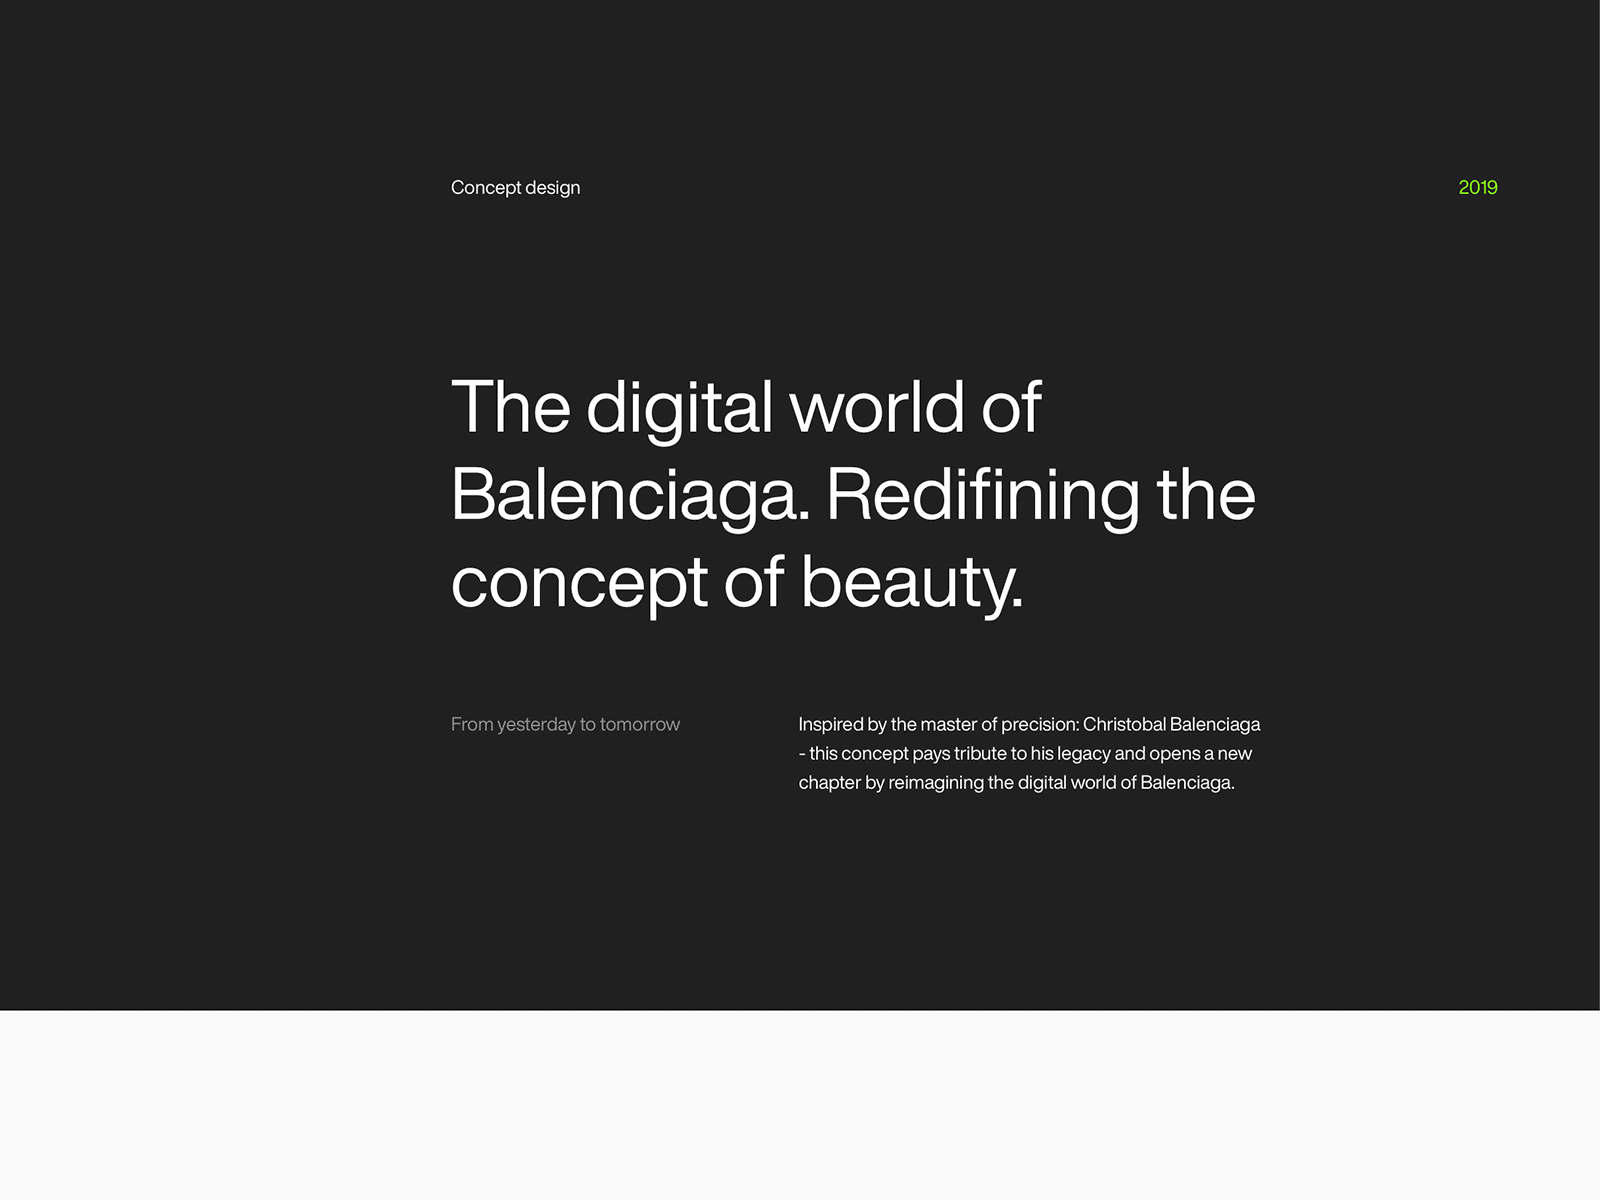 The digital world of Balenciaga - Concept